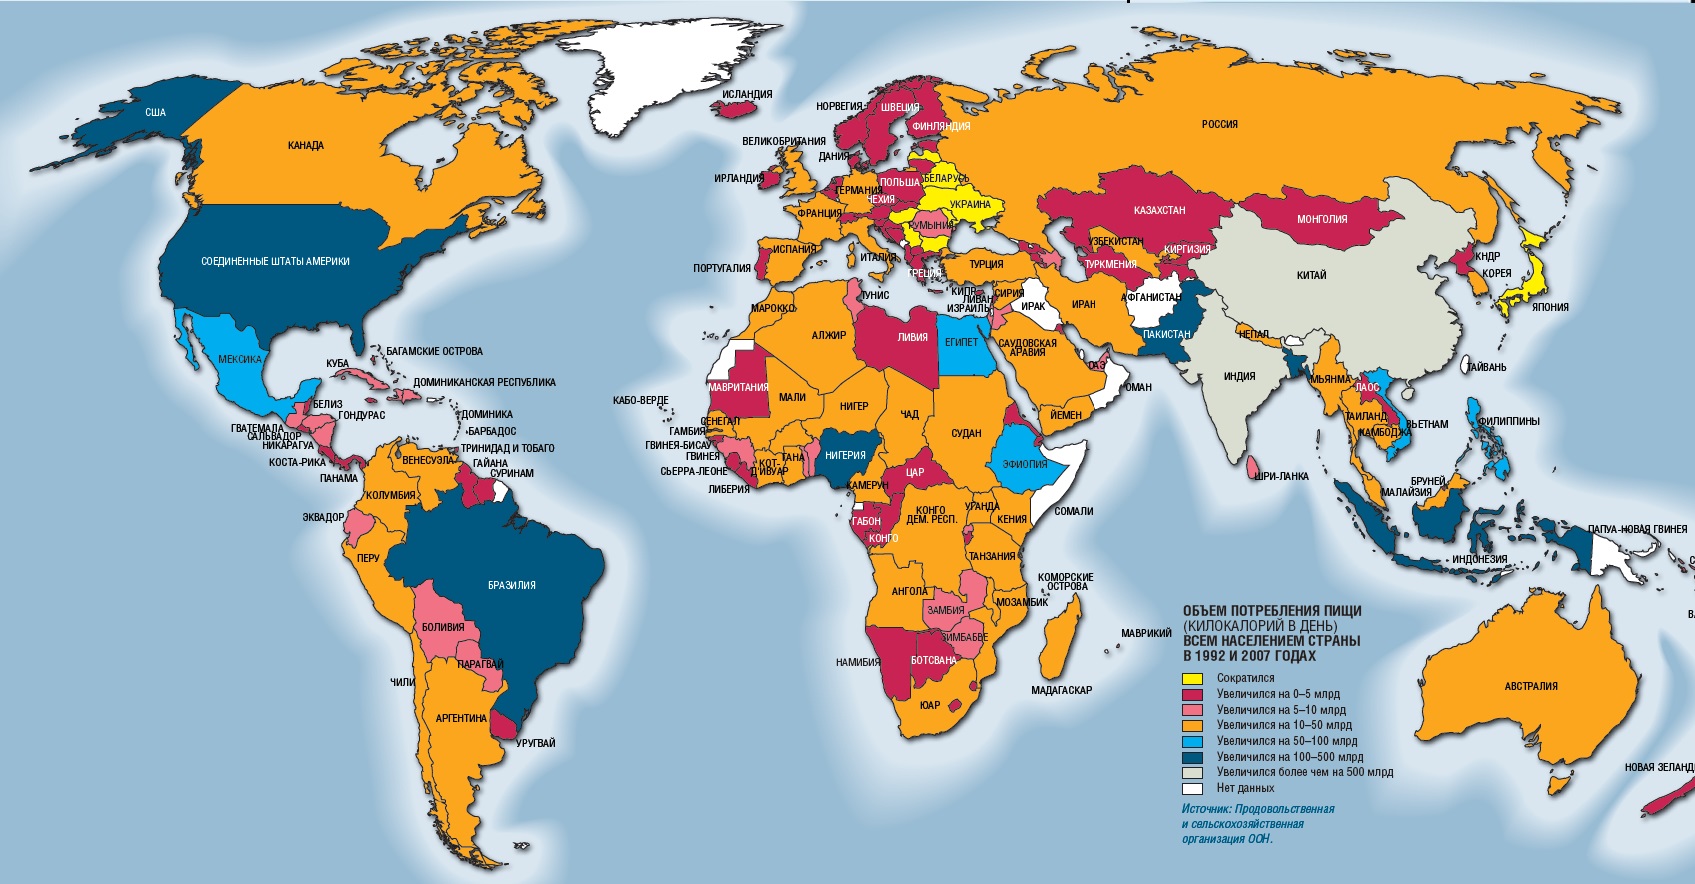 Карта экономики стран. Развитые и развивающиеся страны карта. Развивающиеся страны на карте. Экономическое развитие стран карта.